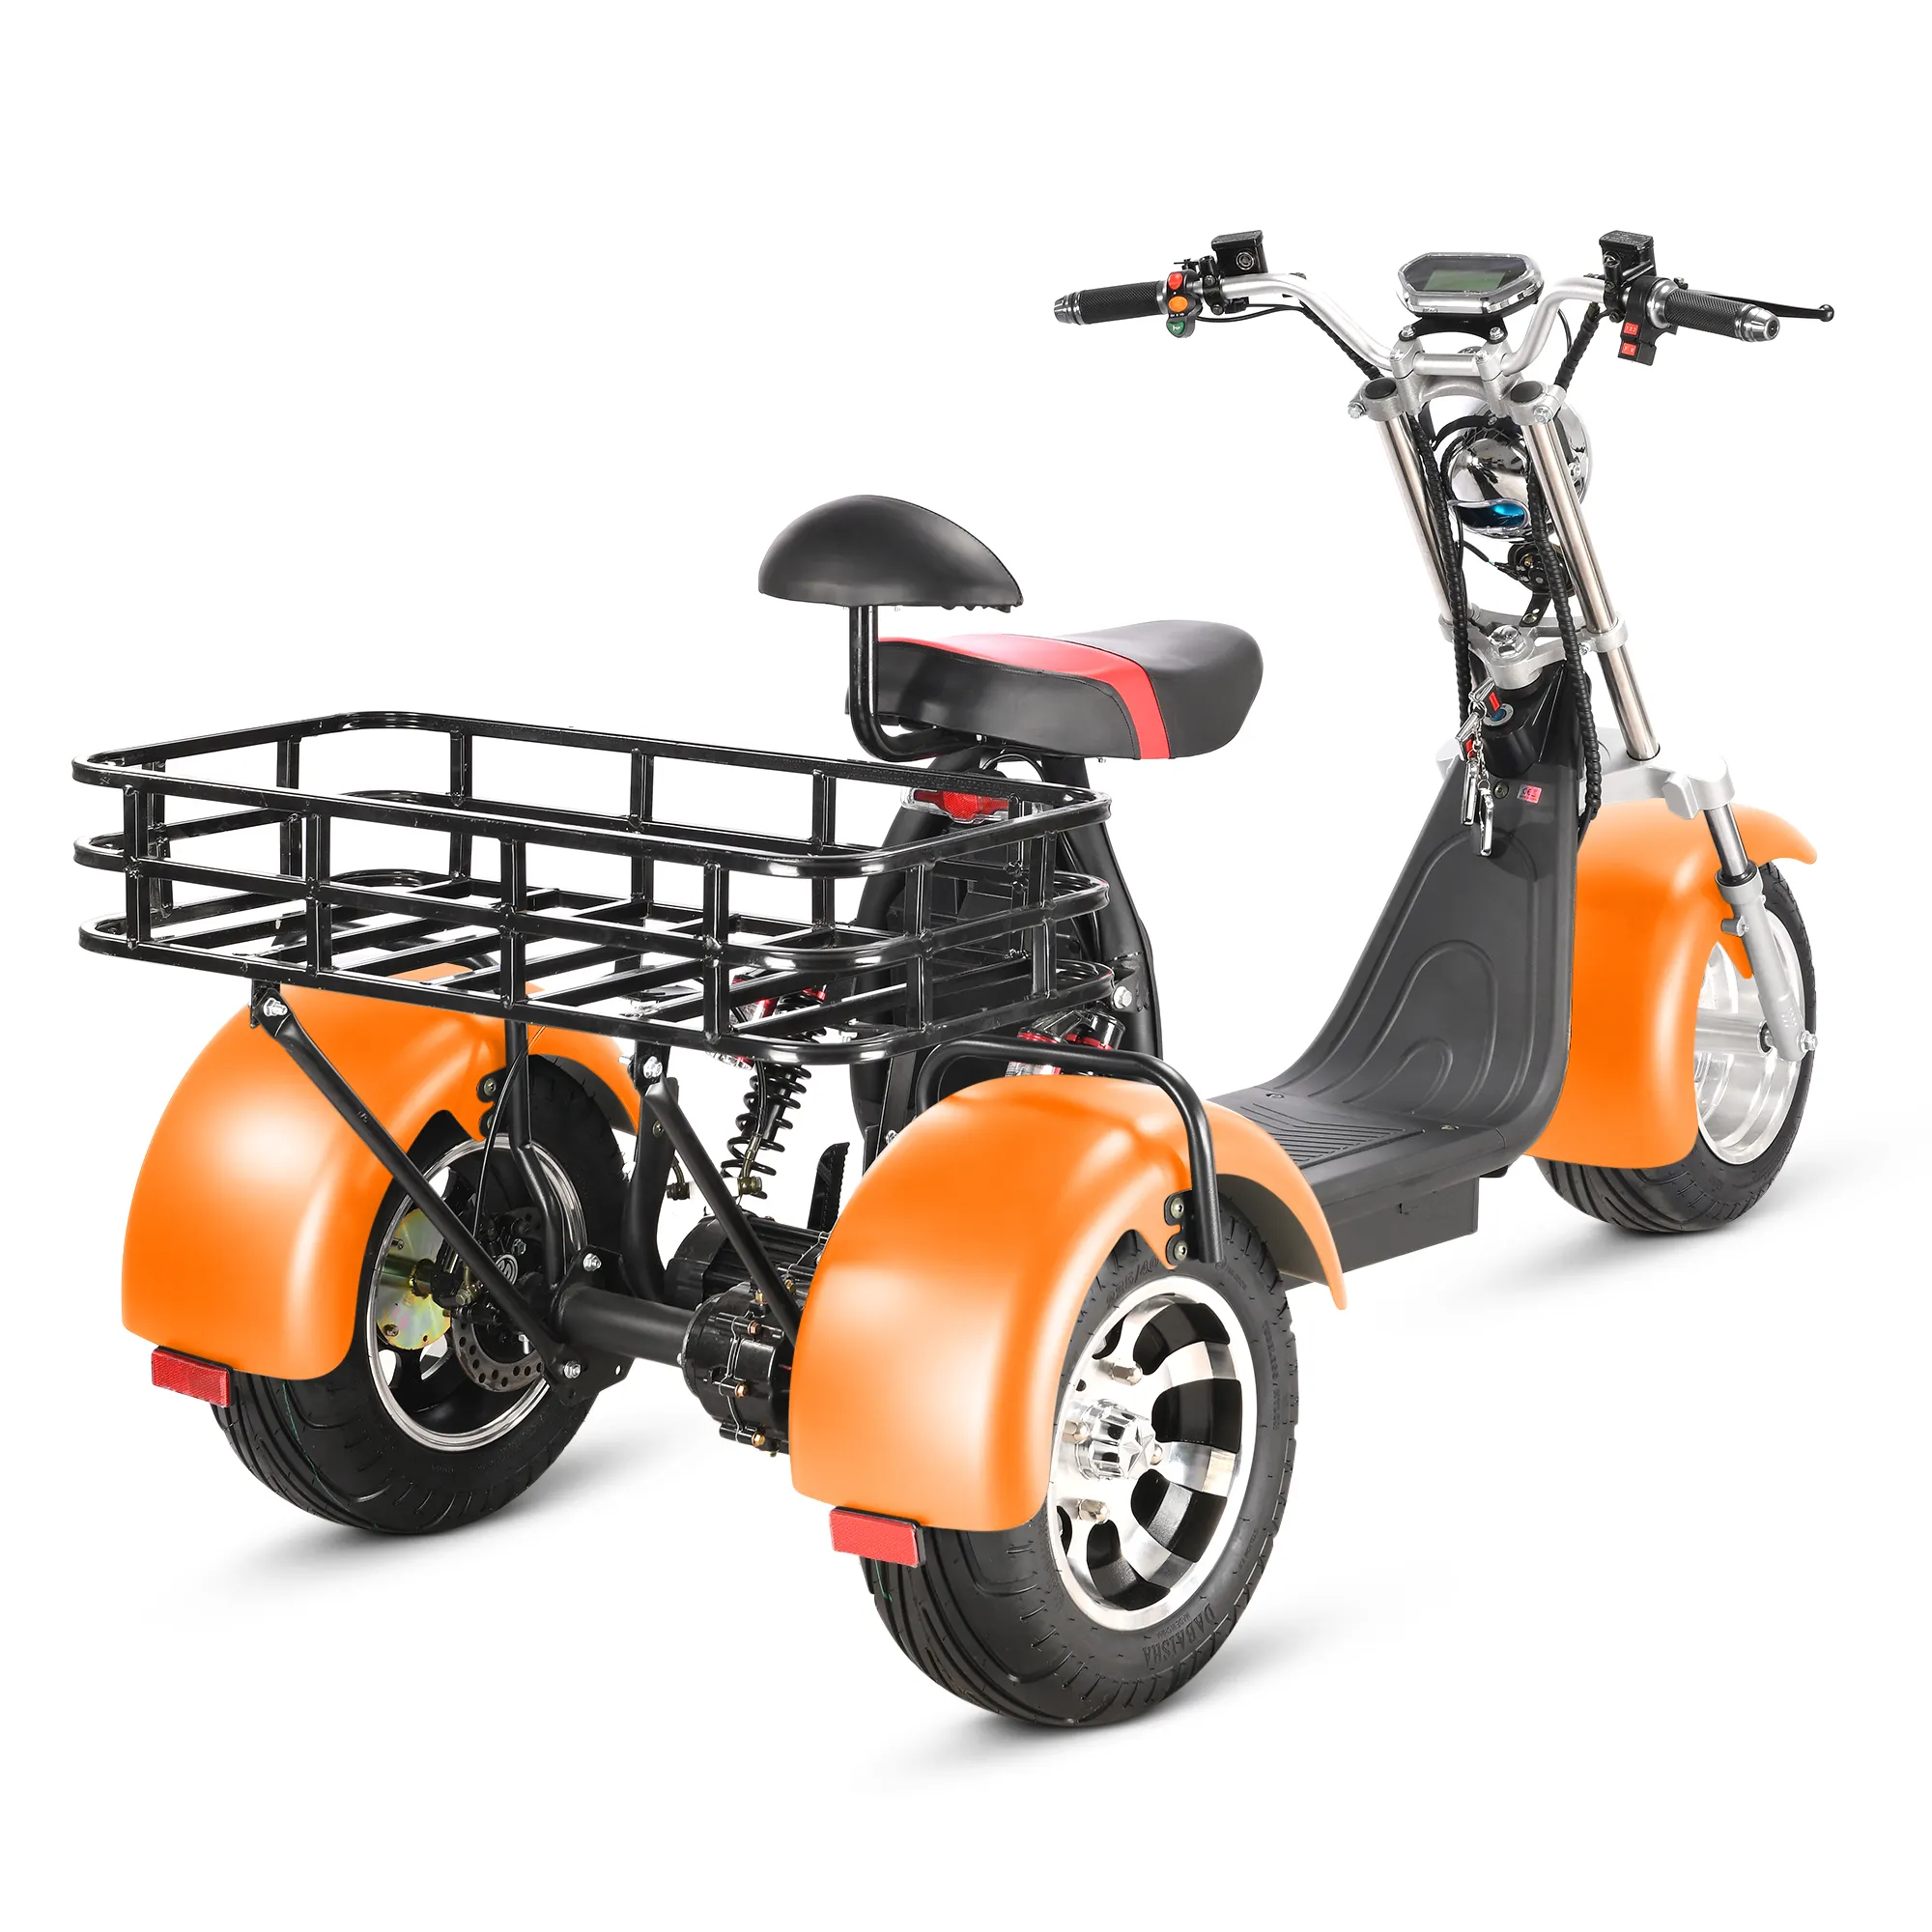 Novo adulto barato 2 assentos três roda com cesta grande motocicleta elétrica para venda dois pessoas